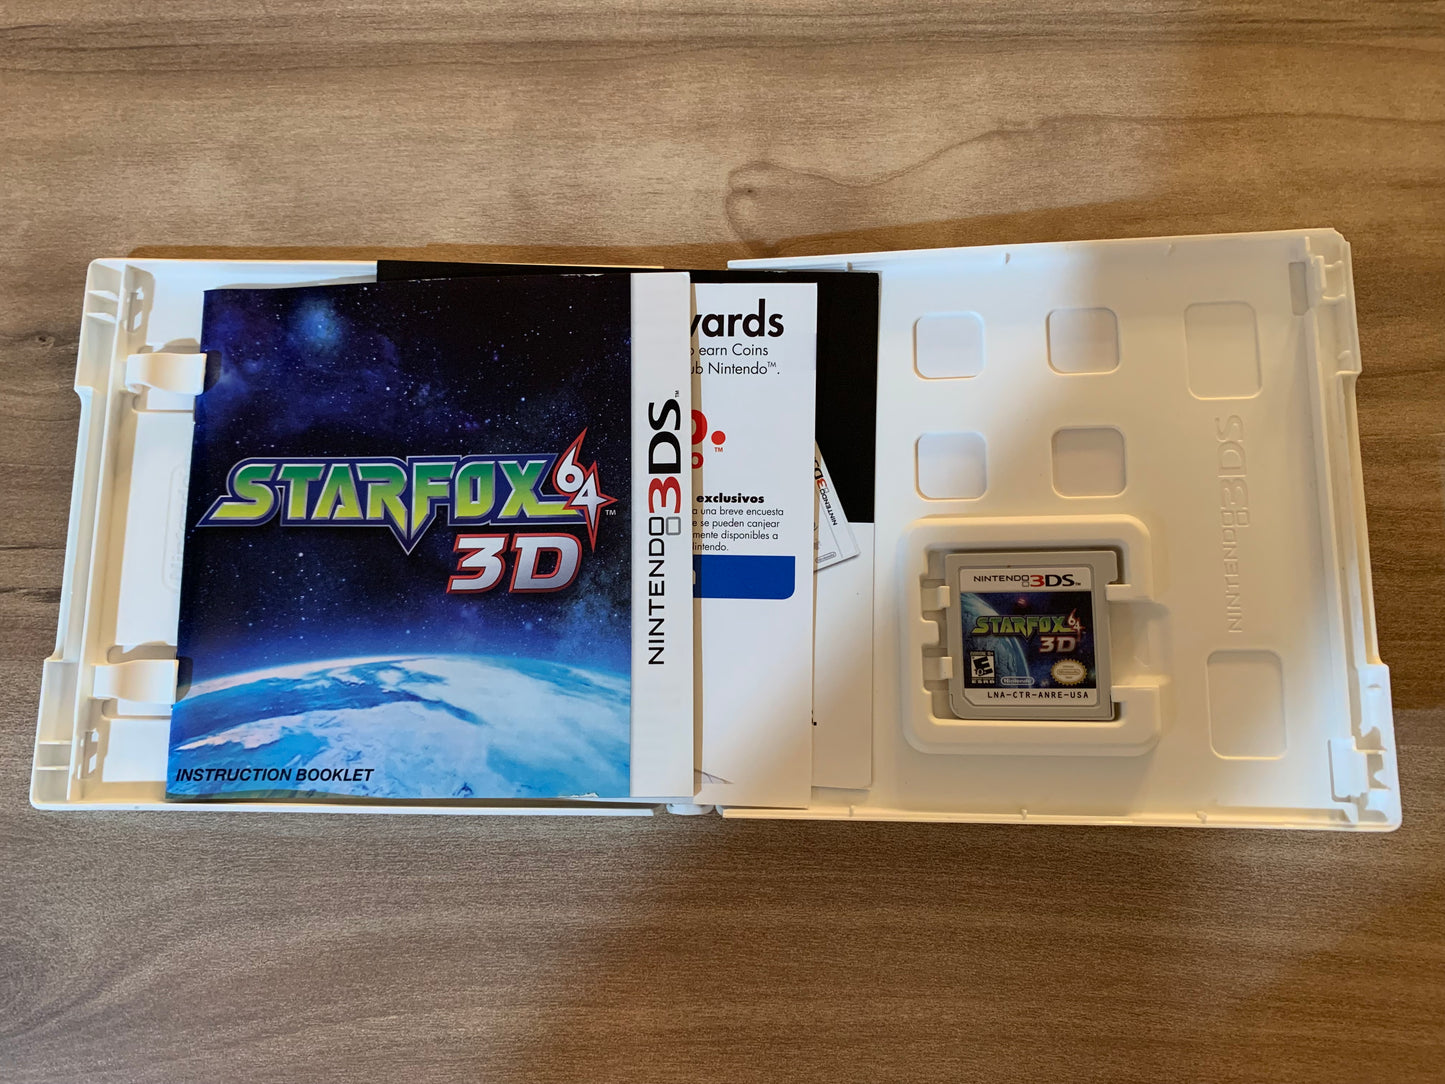 NiNTENDO 3DS | STAR FOX 64 3D